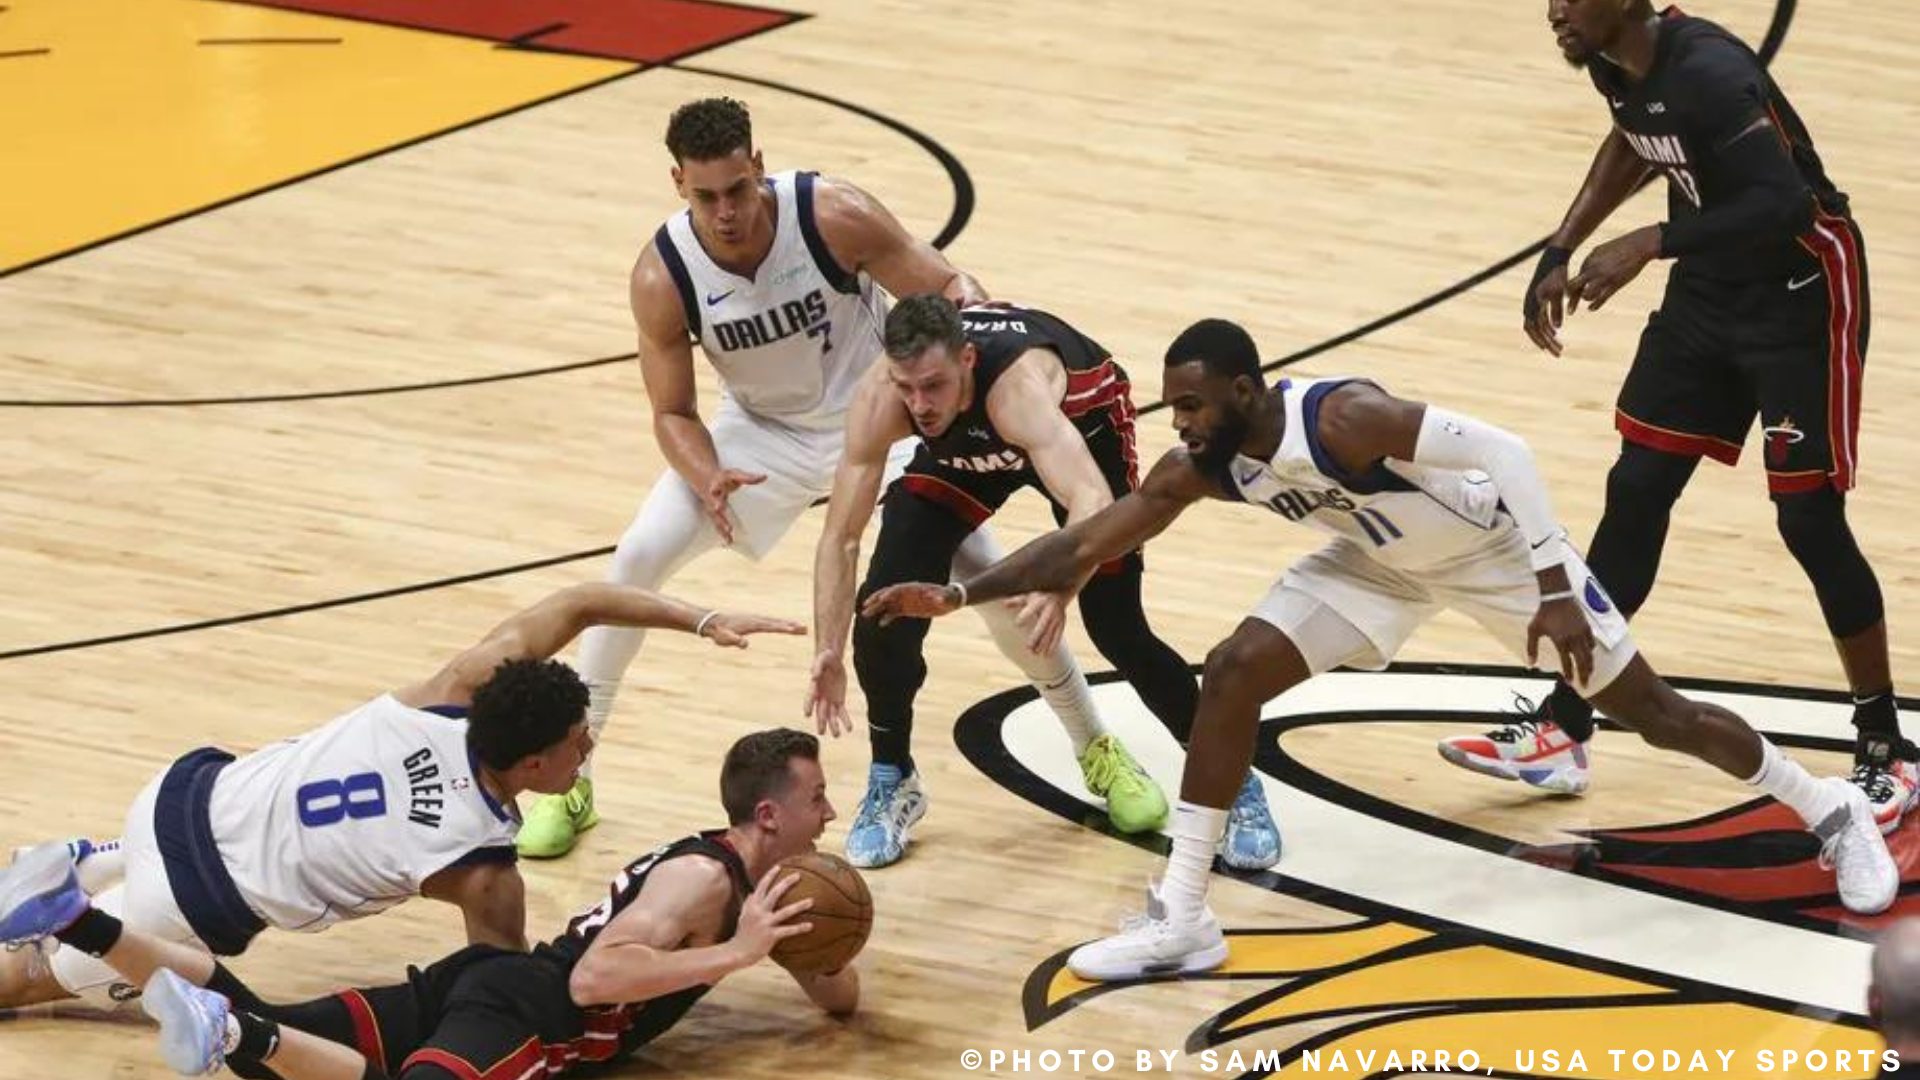 Hardaway dominates in the Heat vs Mavericks game